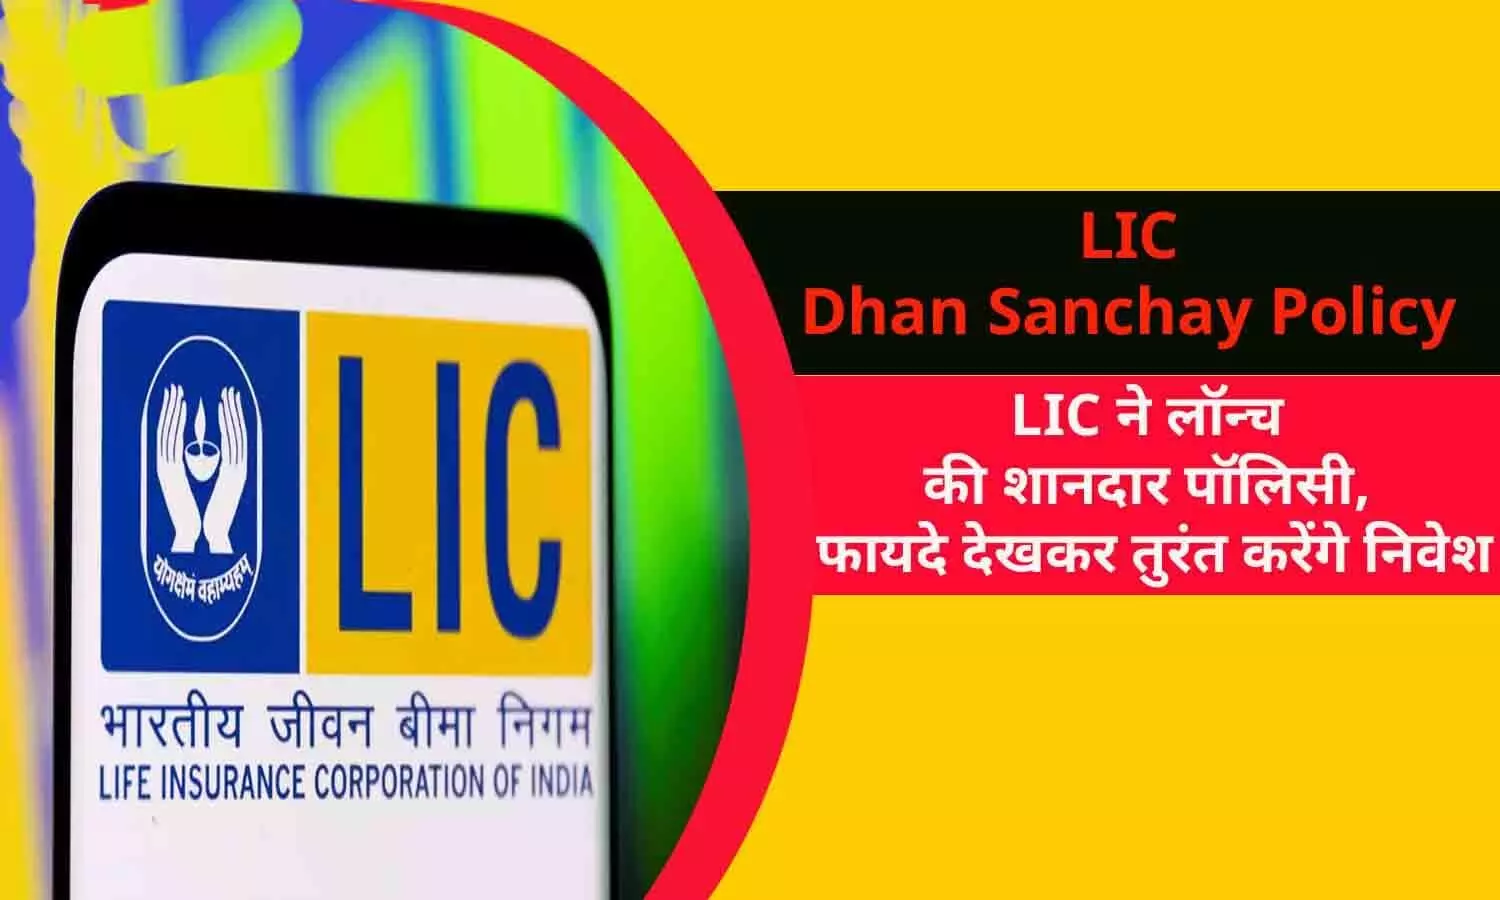 LIC Dhan Sanchay Policy